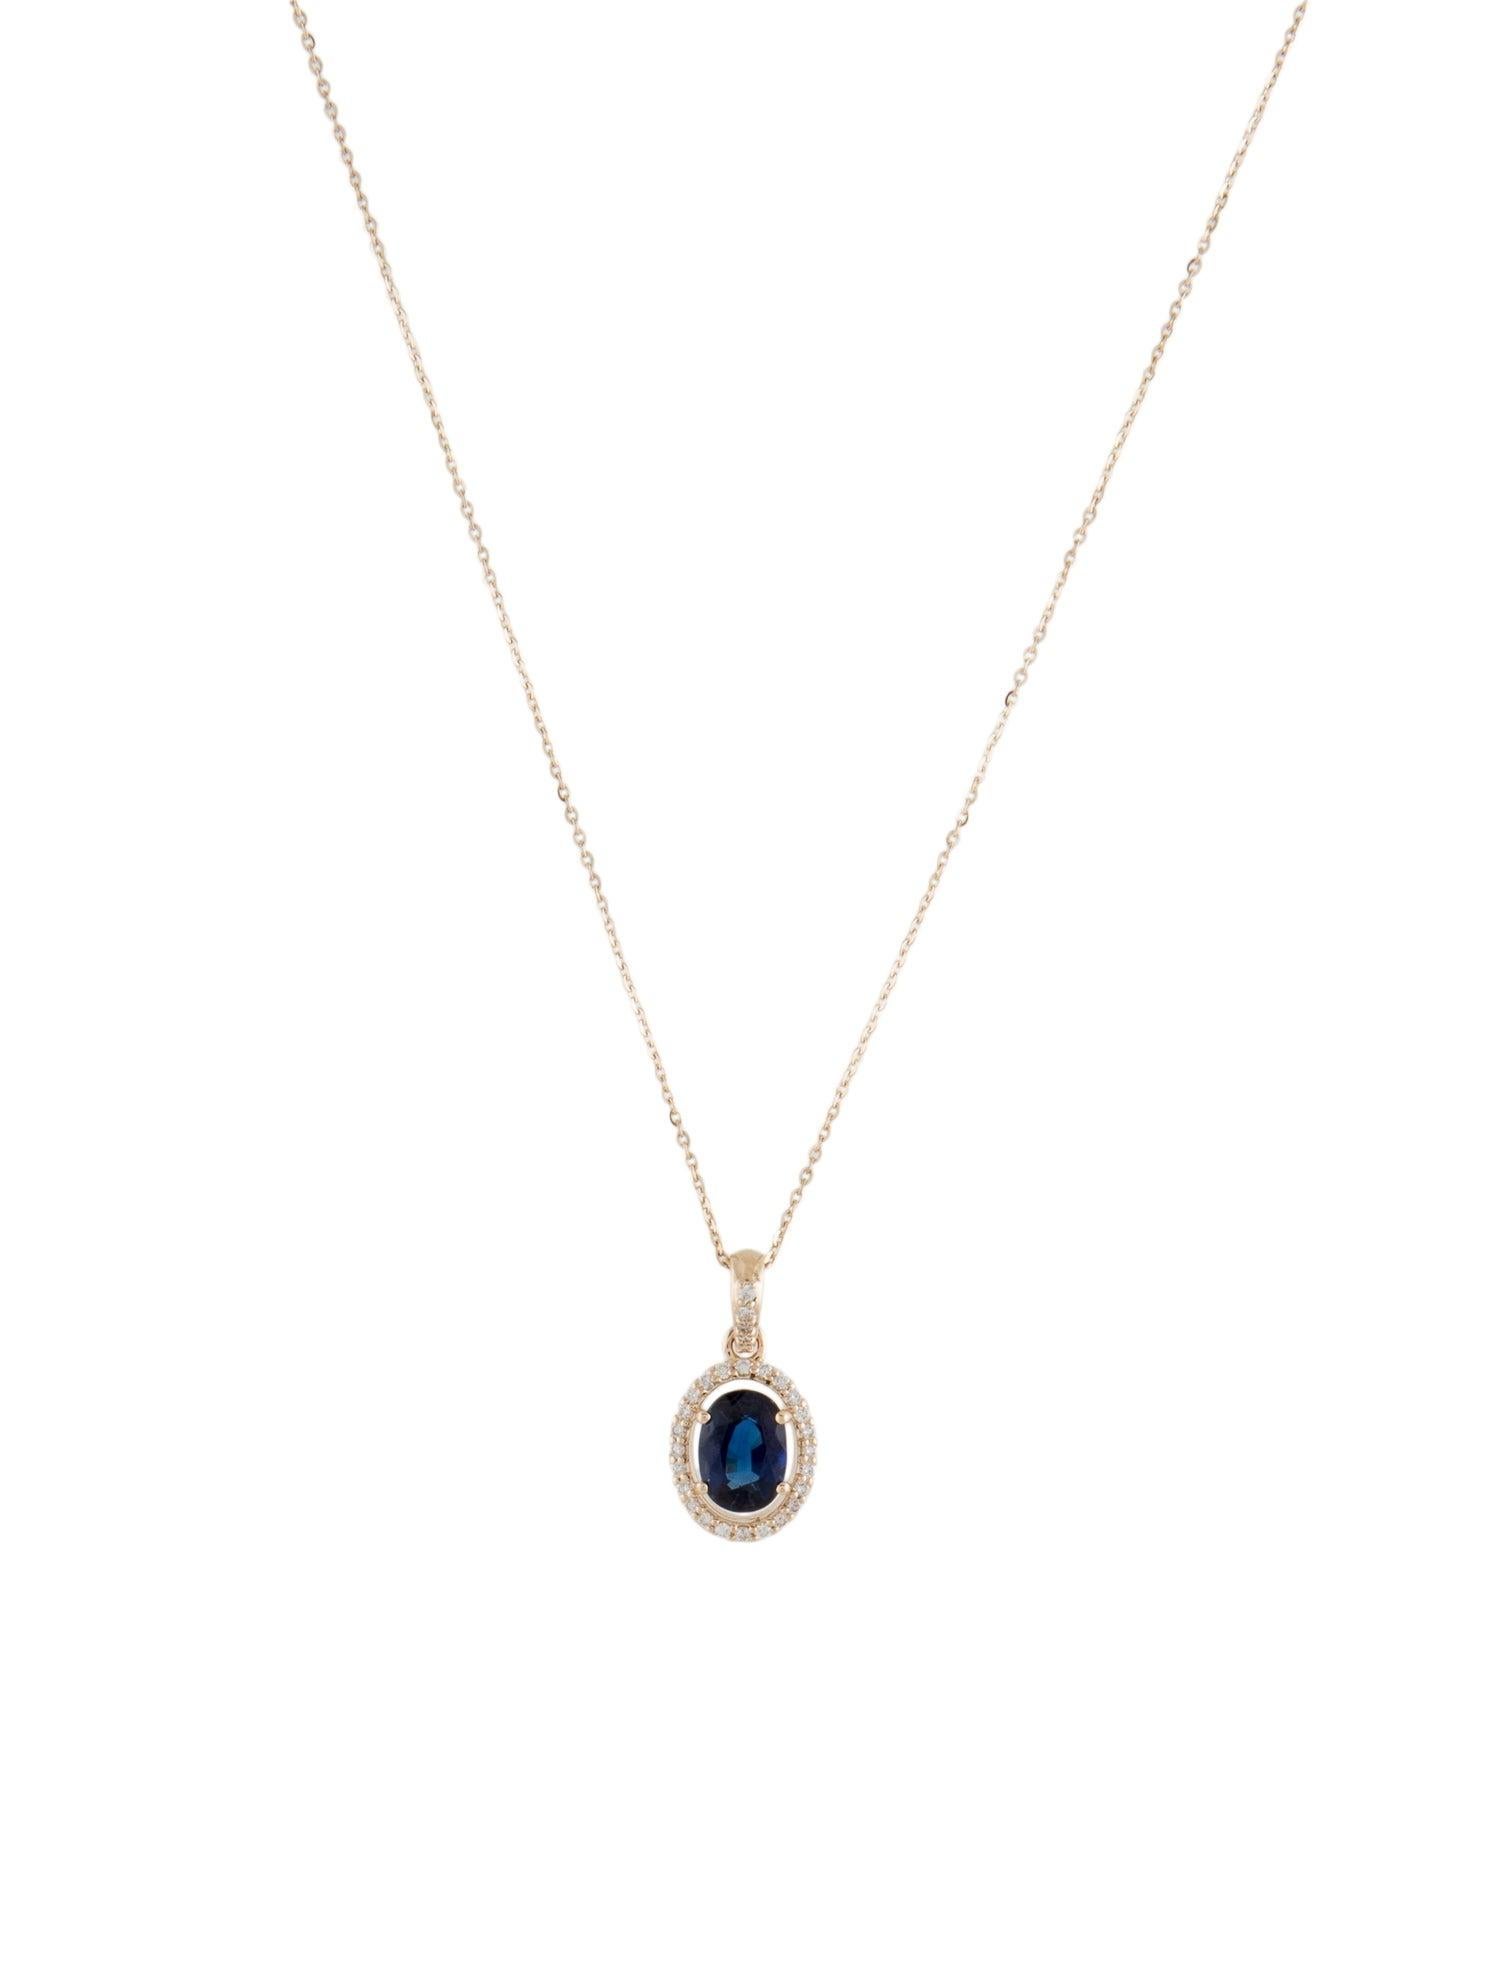 Brilliant Cut 14K 1.26ct Sapphire & Diamond Pendant Necklace: Exquisite Luxury Statement Piece For Sale